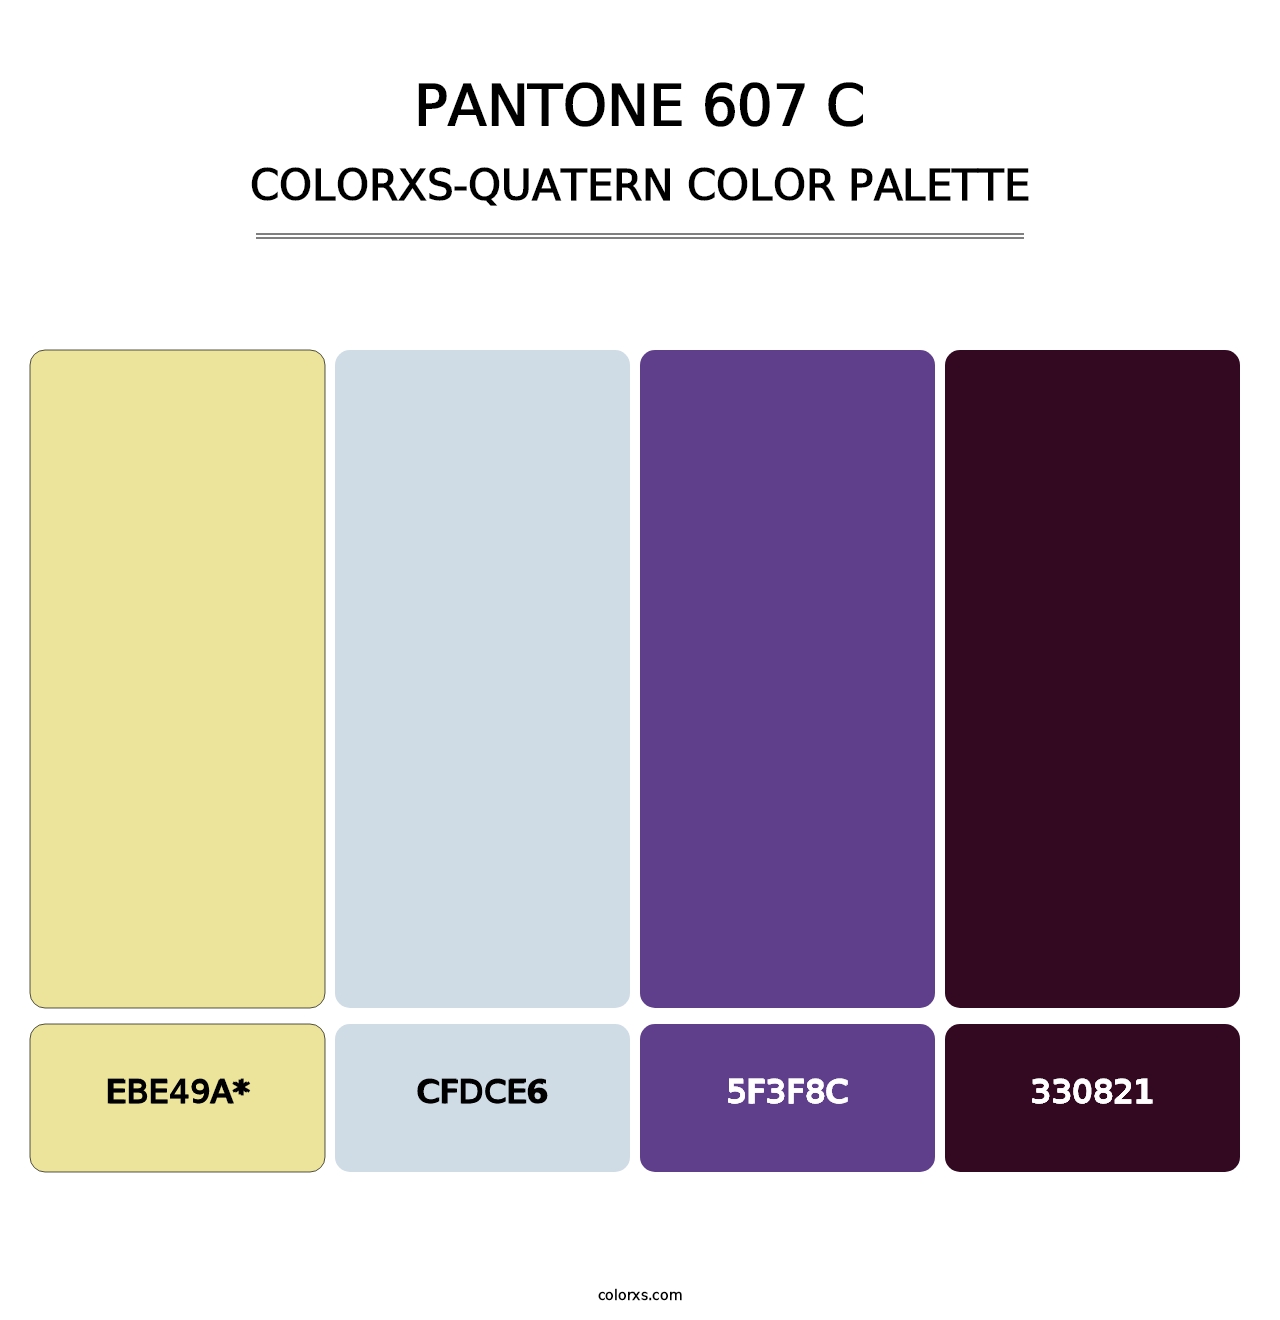 PANTONE 607 C - Colorxs Quad Palette